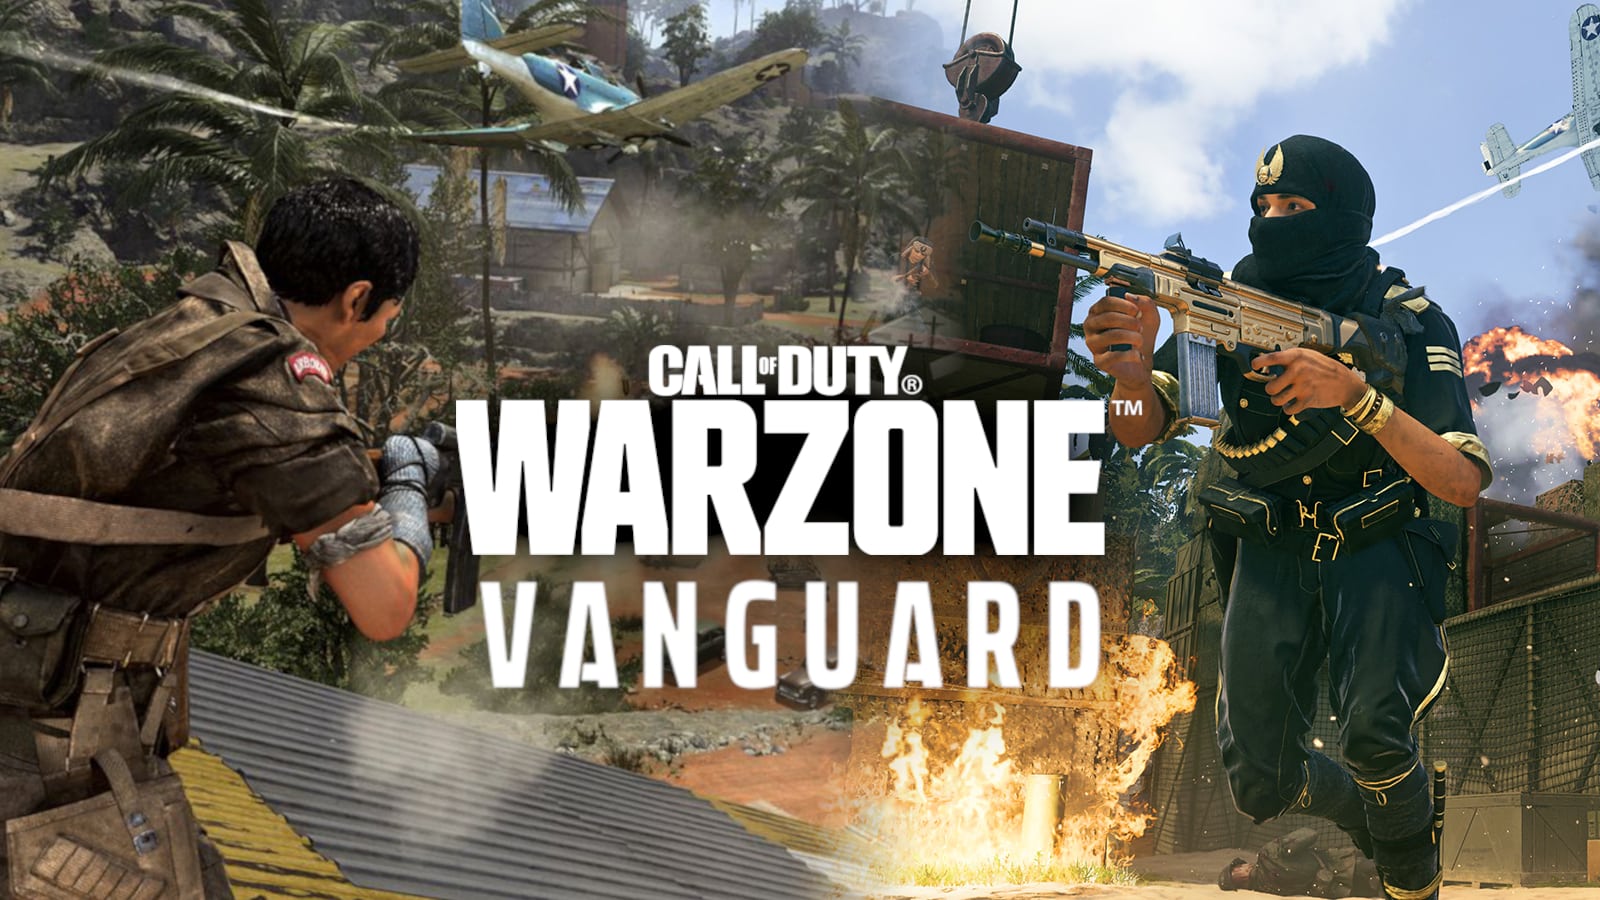 Come cambiare il tuo nome in Warzone & Vanguard